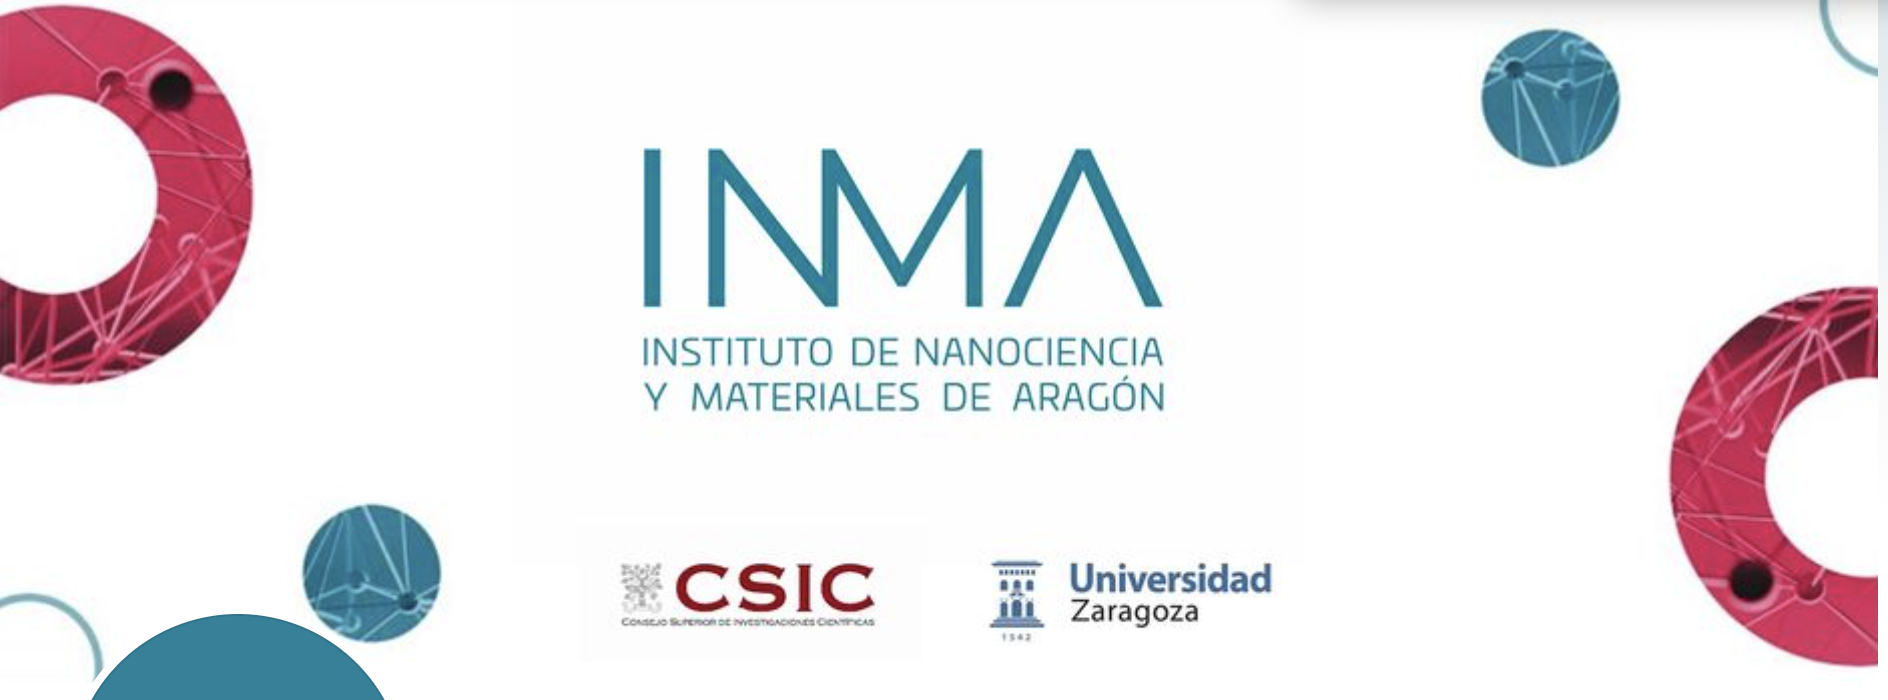 Instituto de Nanociencia y Materiales de Aragón - INMA